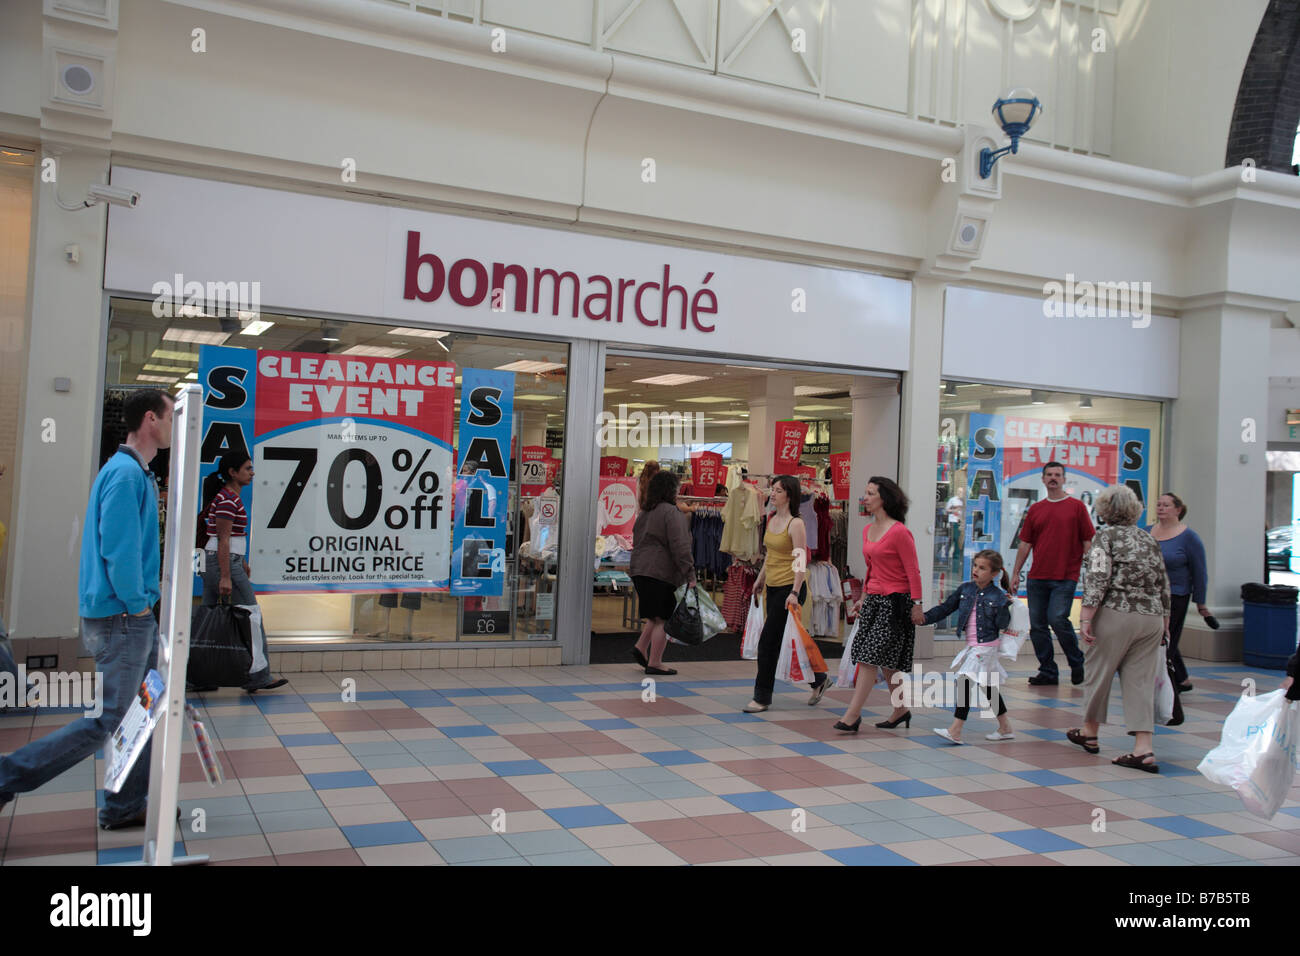 France, Paris, Le Bon Marche department store, the big grocery store Stock  Photo - Alamy